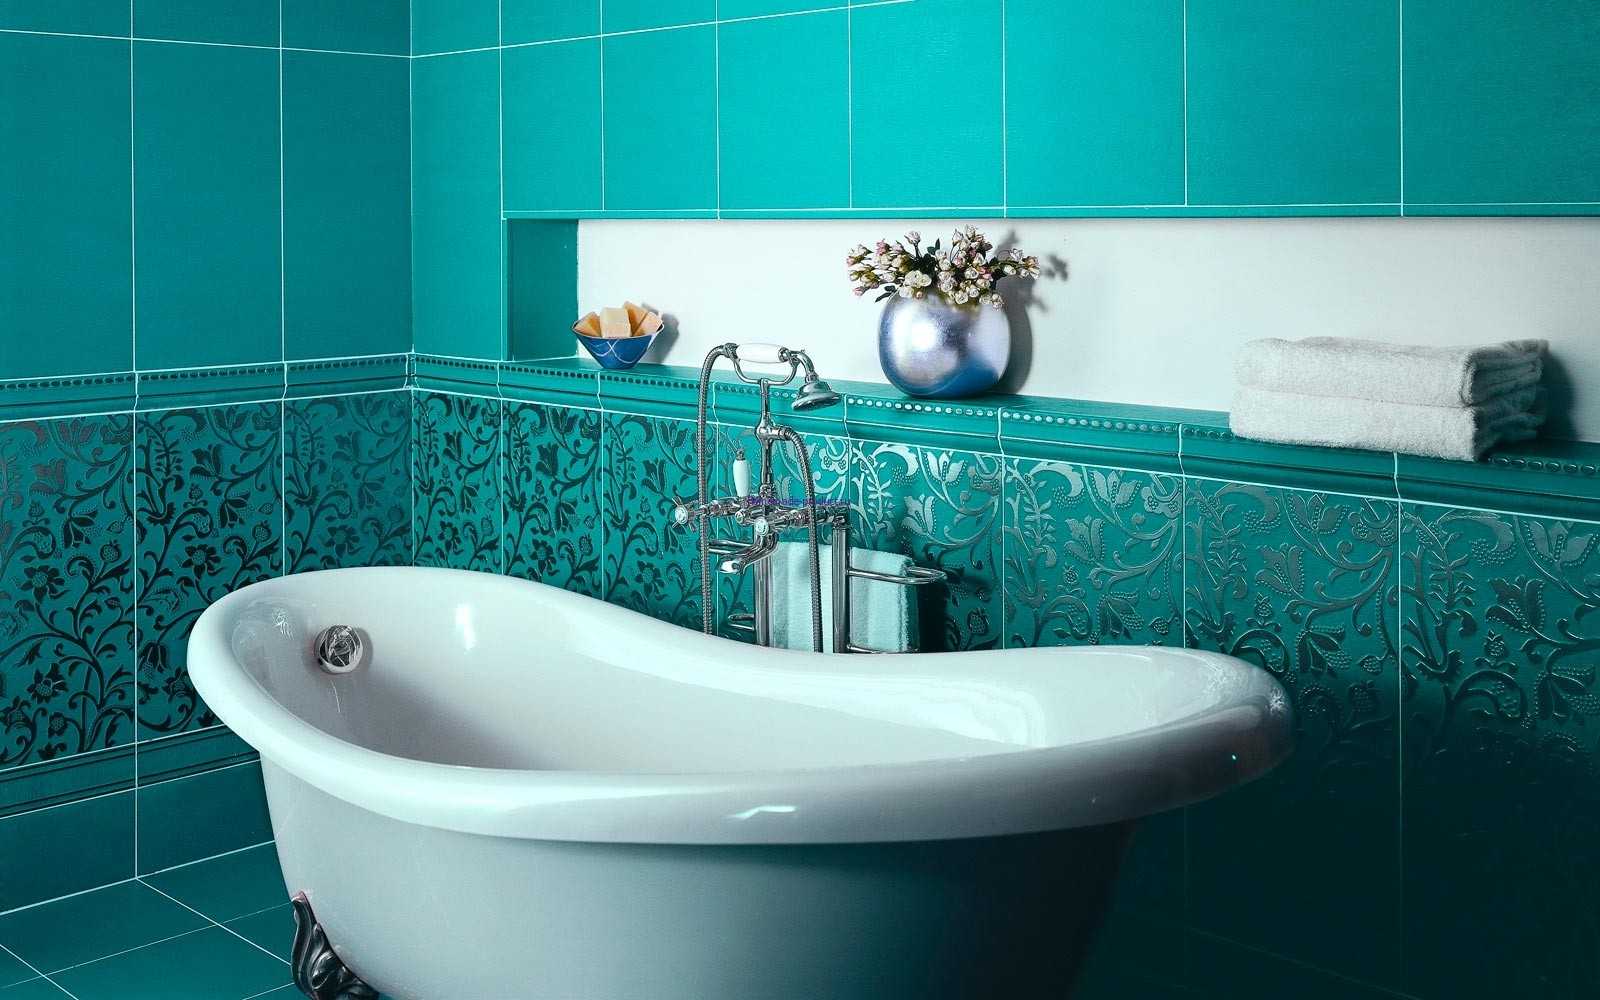 Основную роль в оформлении большинства ванных комнат, выполняет керамическая плитка. От ее правильного подбора напрямую зависит общий дизайн комнаты, цветовая гамма, освещенность и даже настроение.